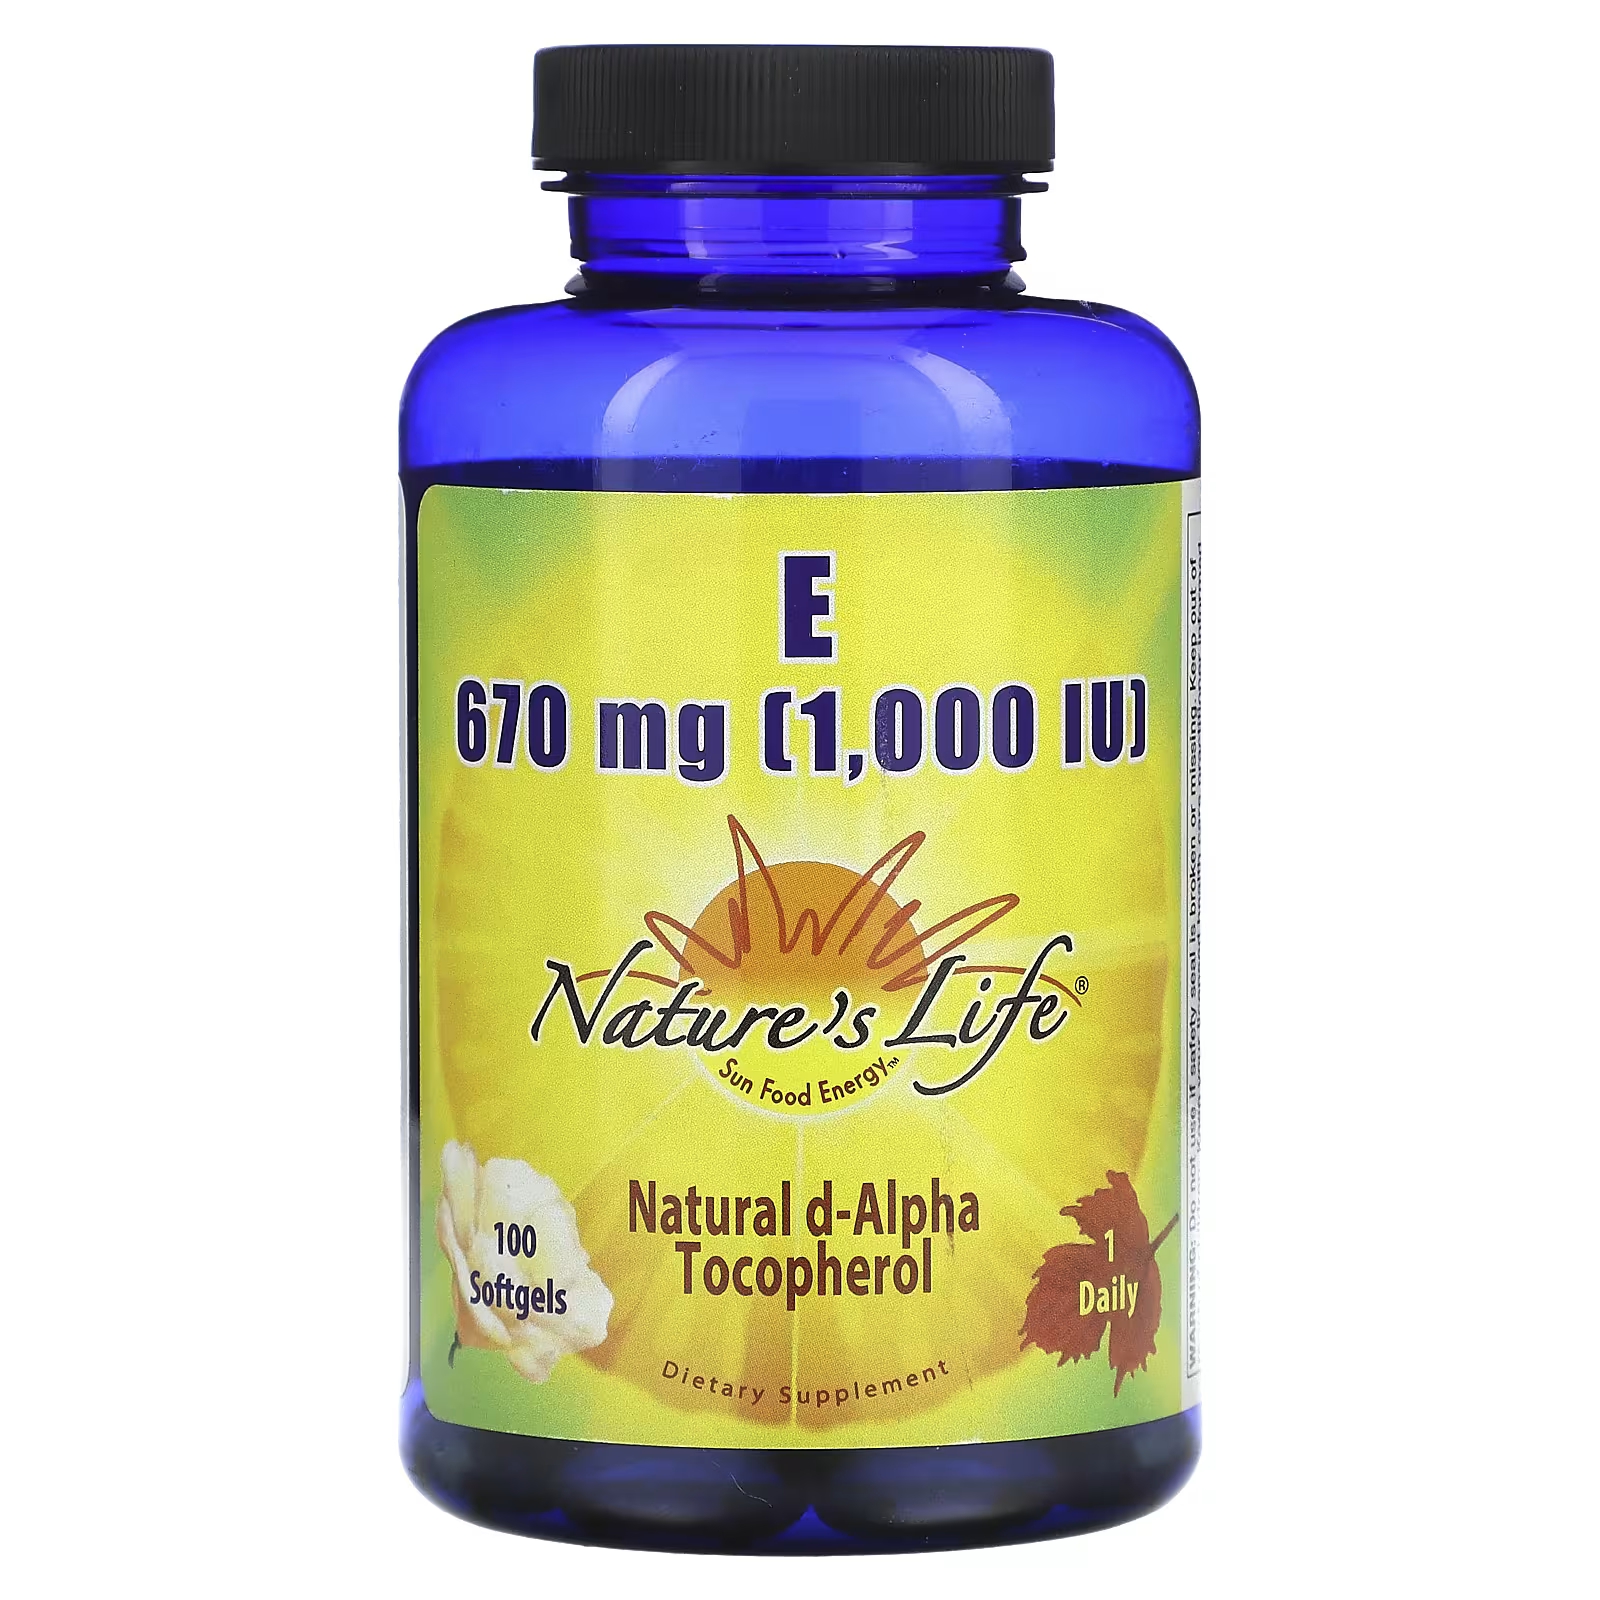 Nature's Life Витамин Е 670 мг (1000 МЕ), 100 мягких таблеток solgar натуральный витамин е 67 мг 100 ме 100 мягких таблеток